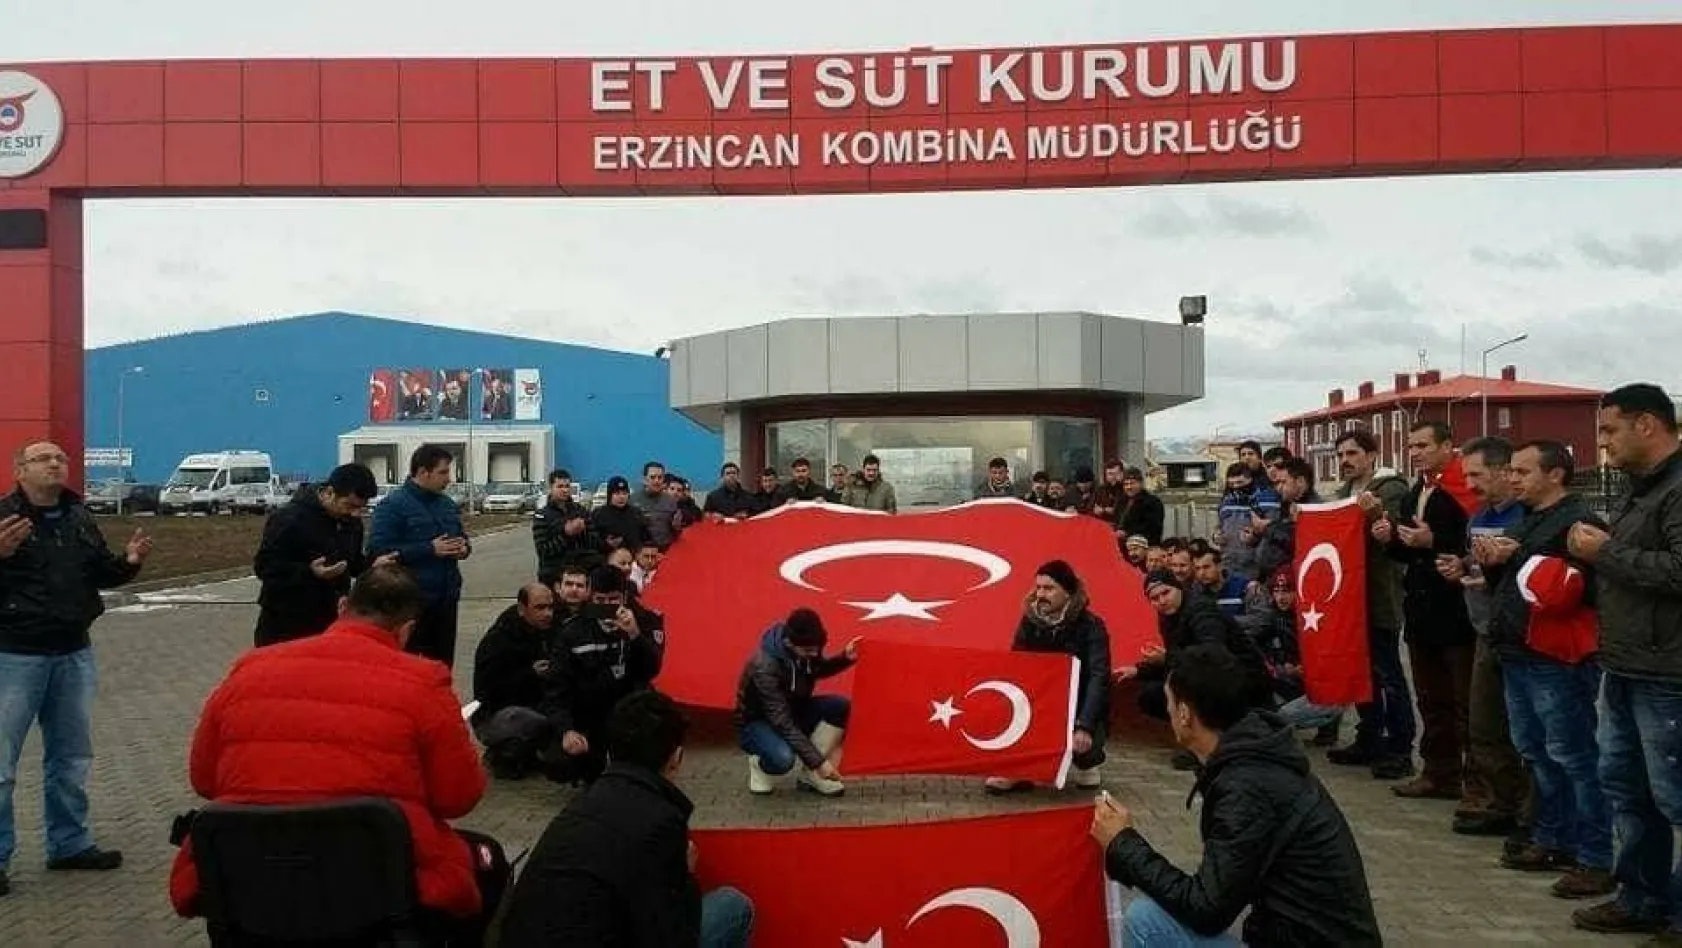 Erzincan Et ve Süt Kurumu çalışanları istihkaklarını Mehmetçiğe bağışladı
